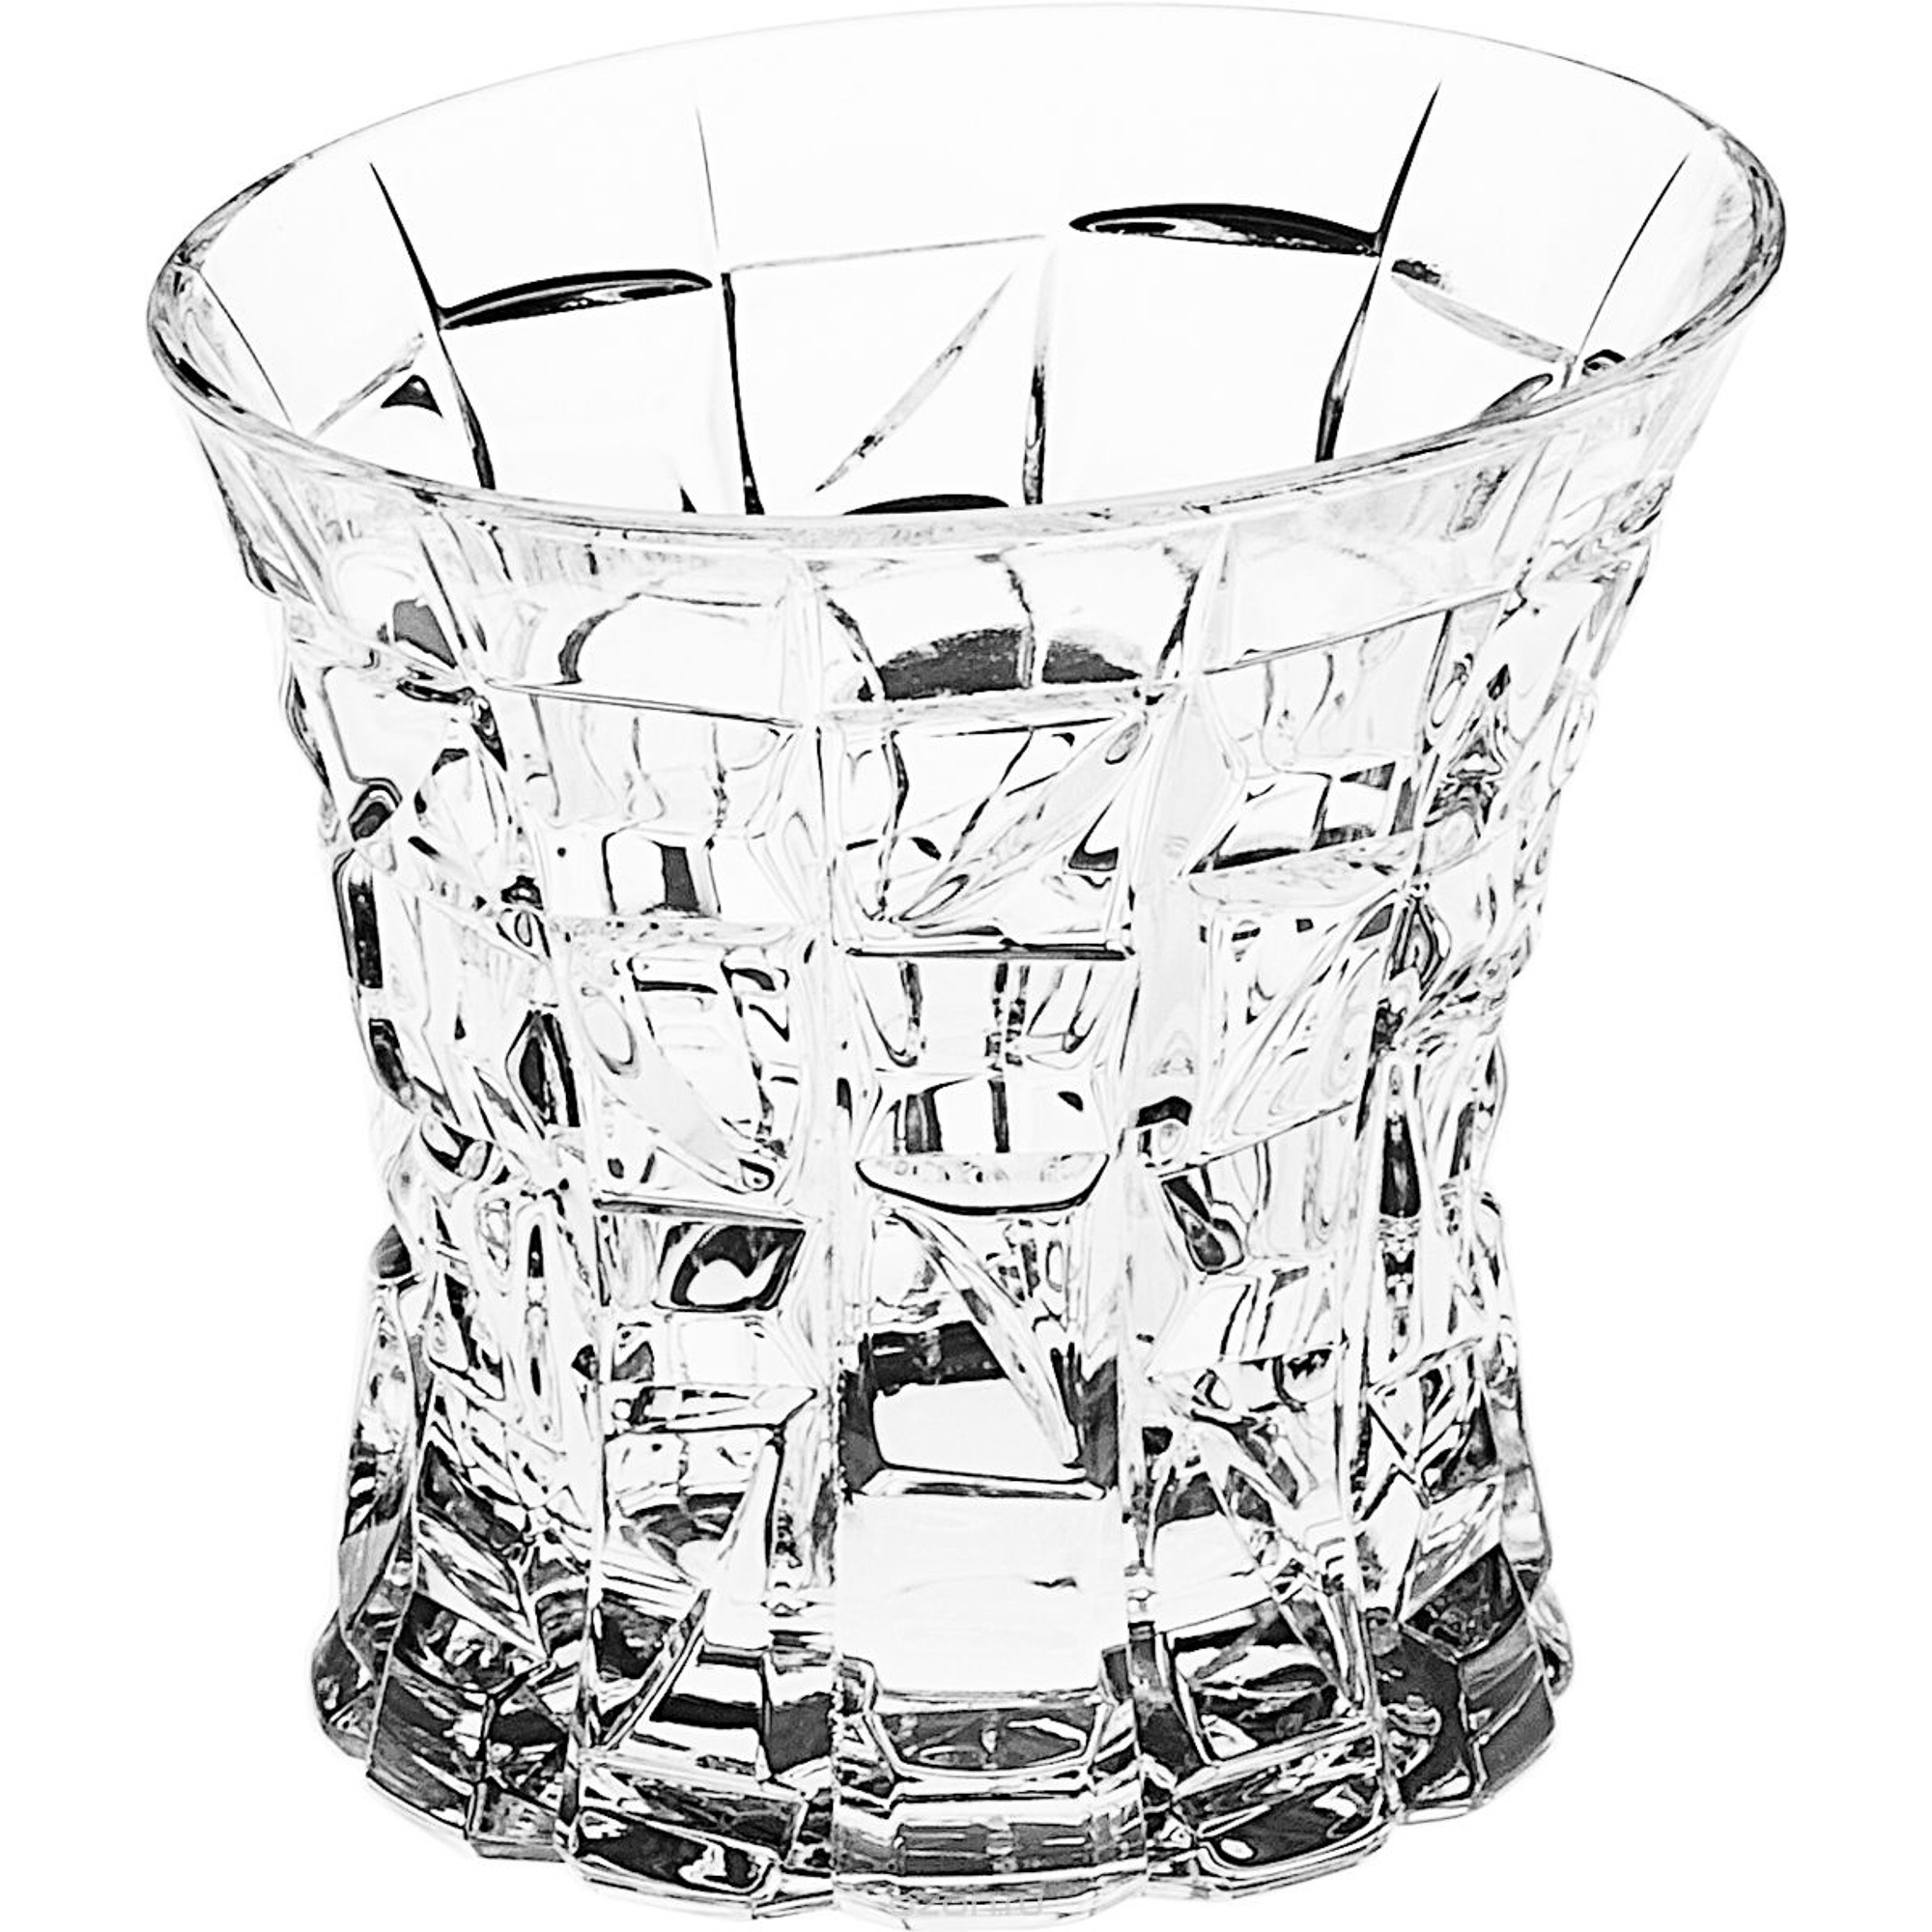 Набор стаканов для виски Crystal bohemia a.s. 990/23203/0/47610/200-209 набор для виски patriot 7 пр 990 99999 9 47610 607 709 crystal bohemia